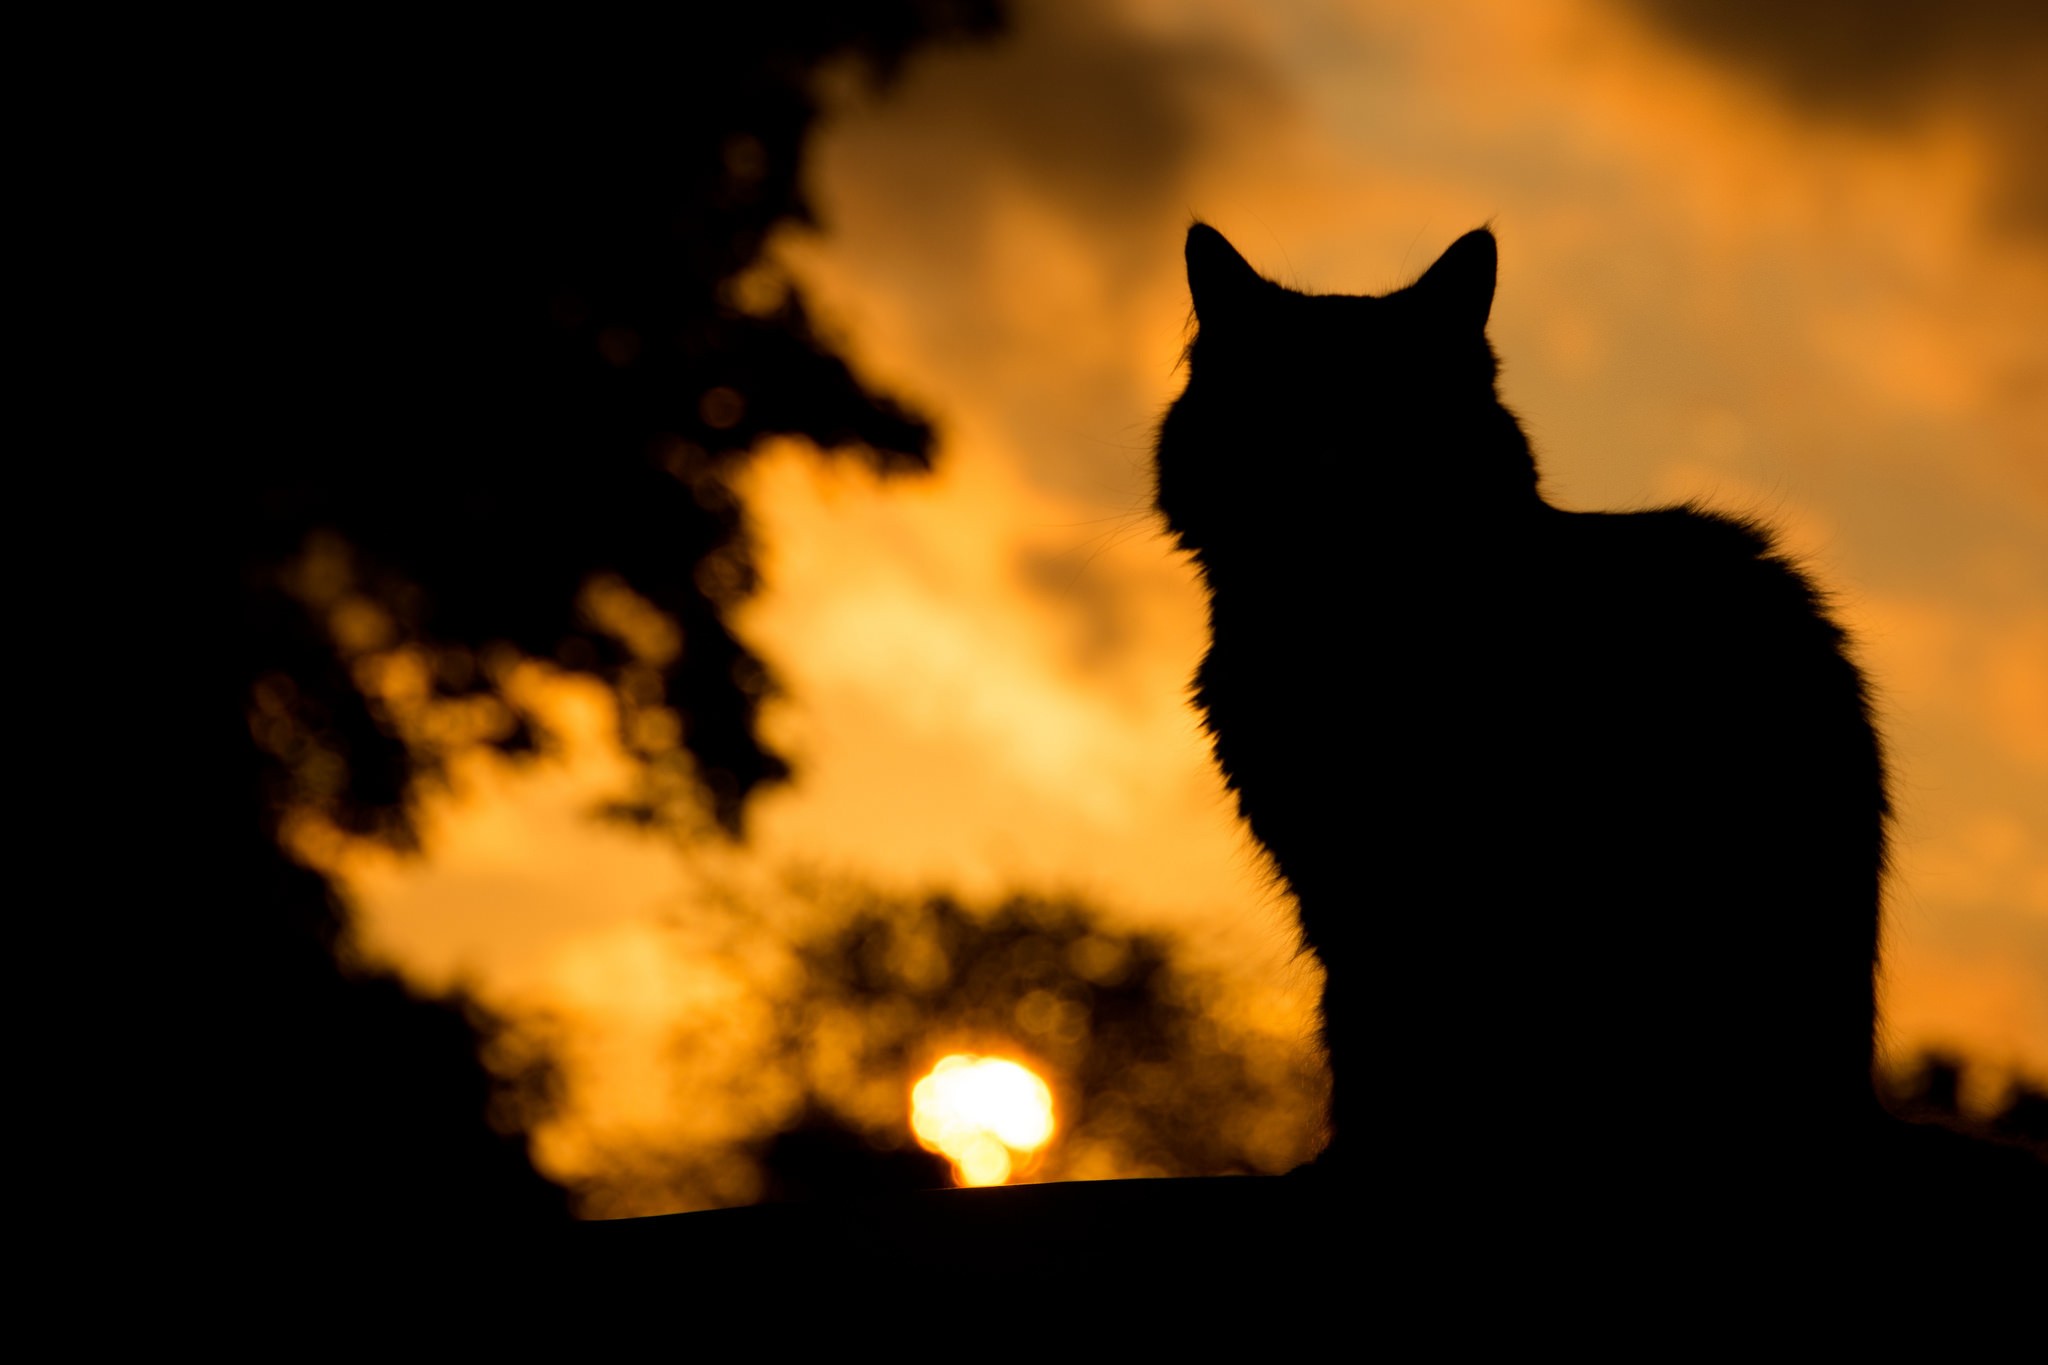 General 2048x1365 dark cats animals mammals silhouette sunset yellow outdoors sunlight feline low light closeup